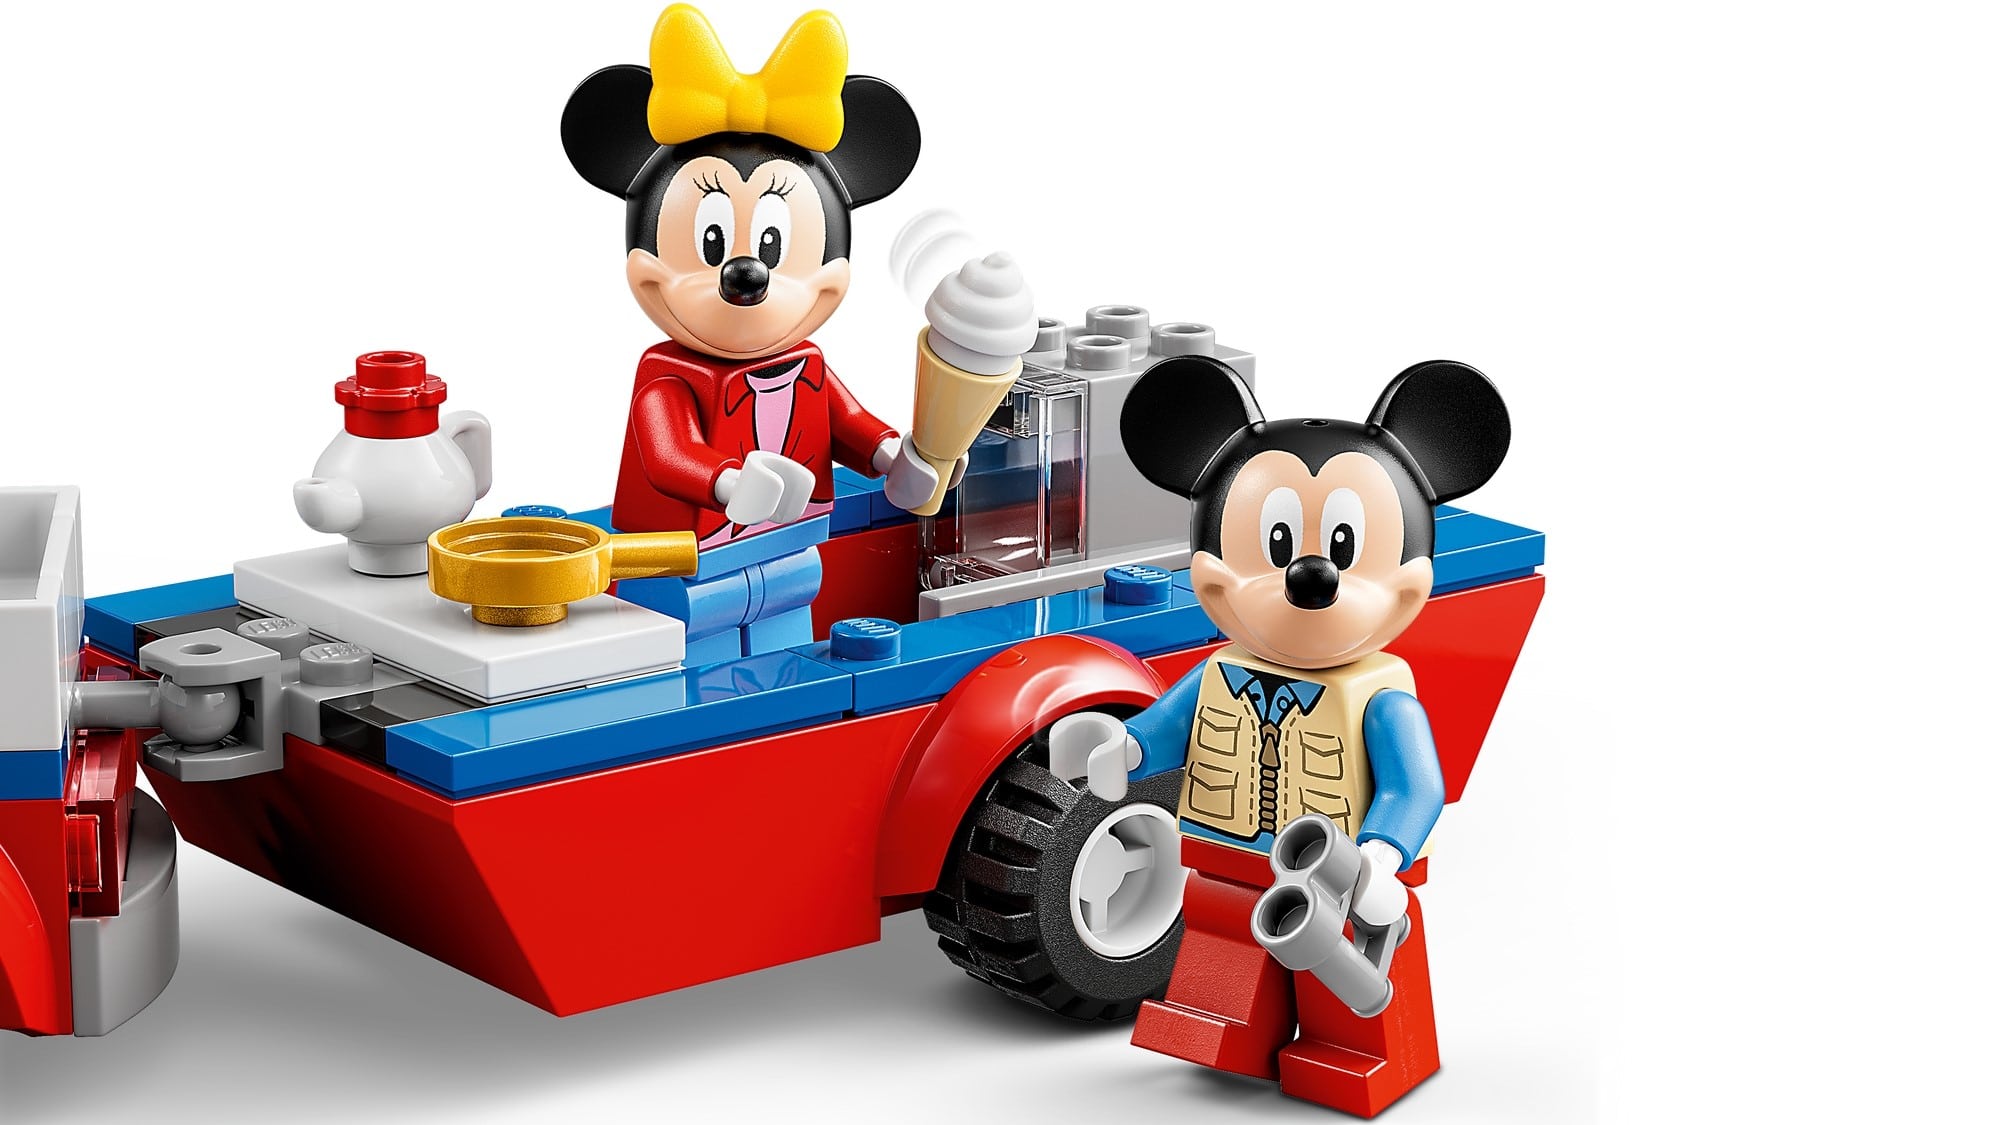 2022年6月1日発売レゴ(R)ディズニー・ミッキー&フレンズ新製品情報